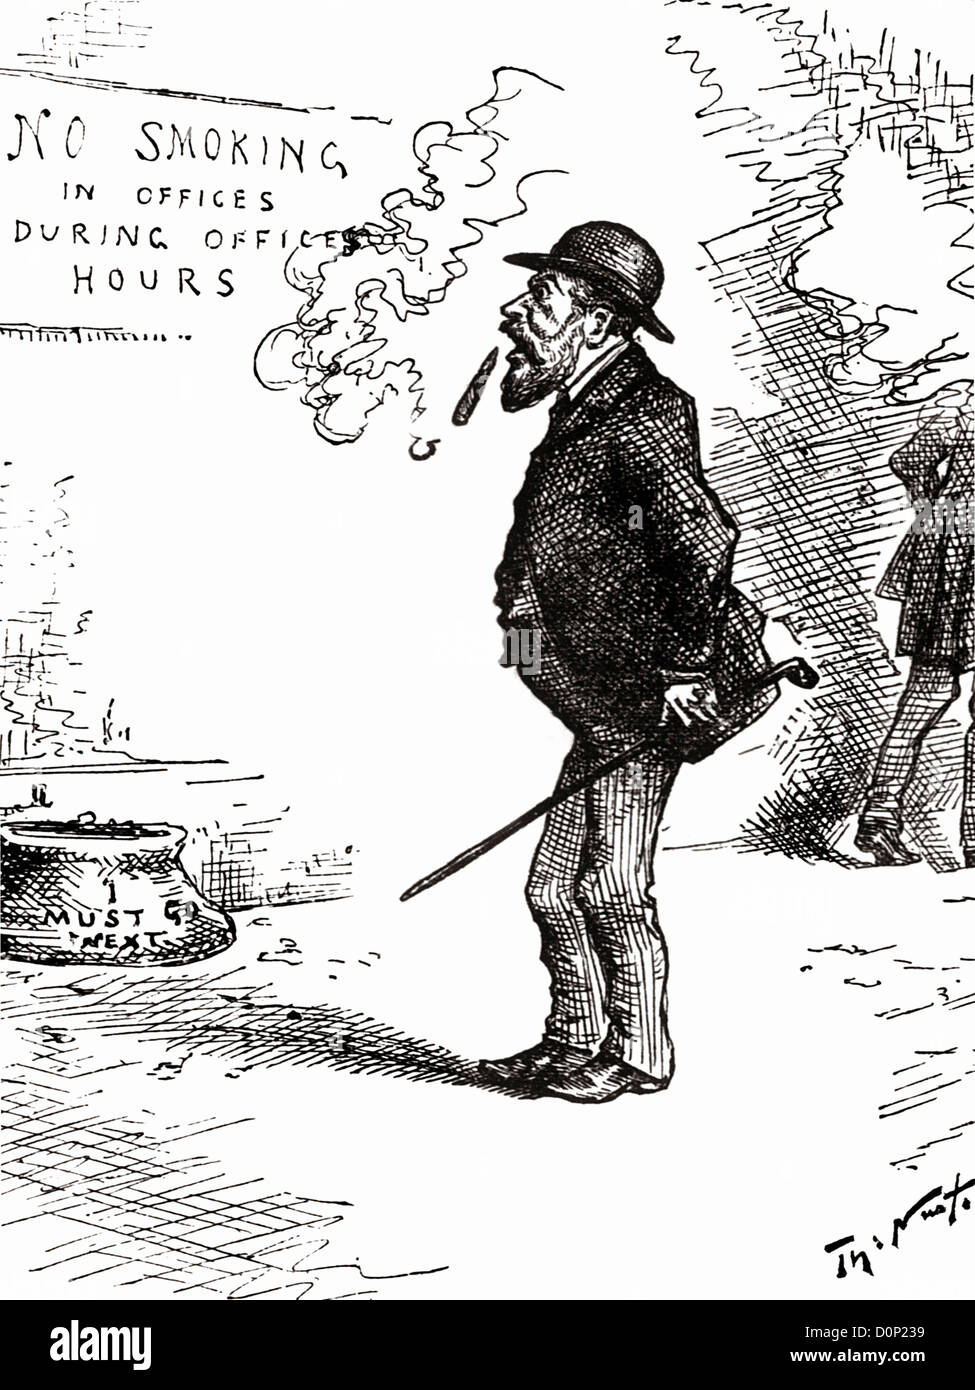 Un dessin de Harper's Weekly vers 1890 grand dessinateur américain Thomas Nast montre office worker dont les fumeurs cigare est retombante. Banque D'Images